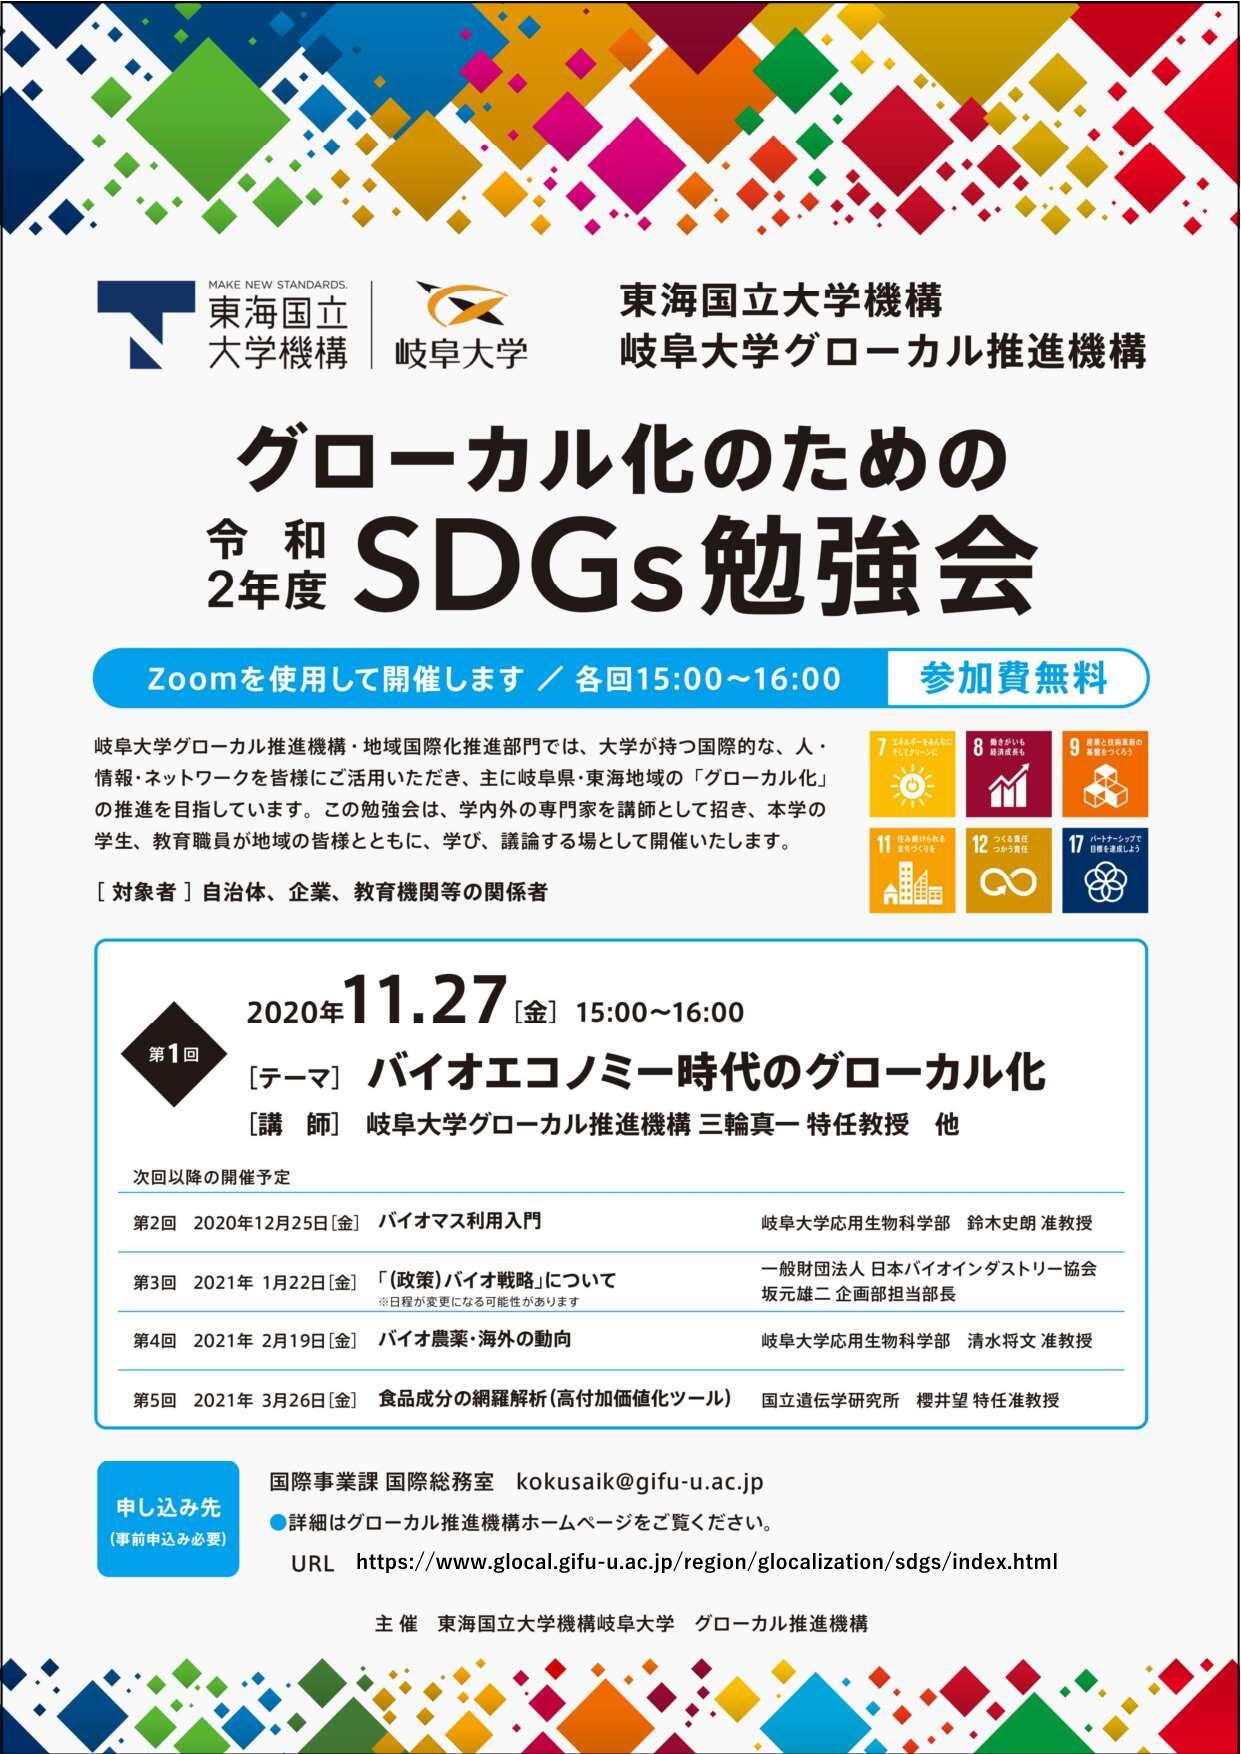 SDGs_Flyer.jpg